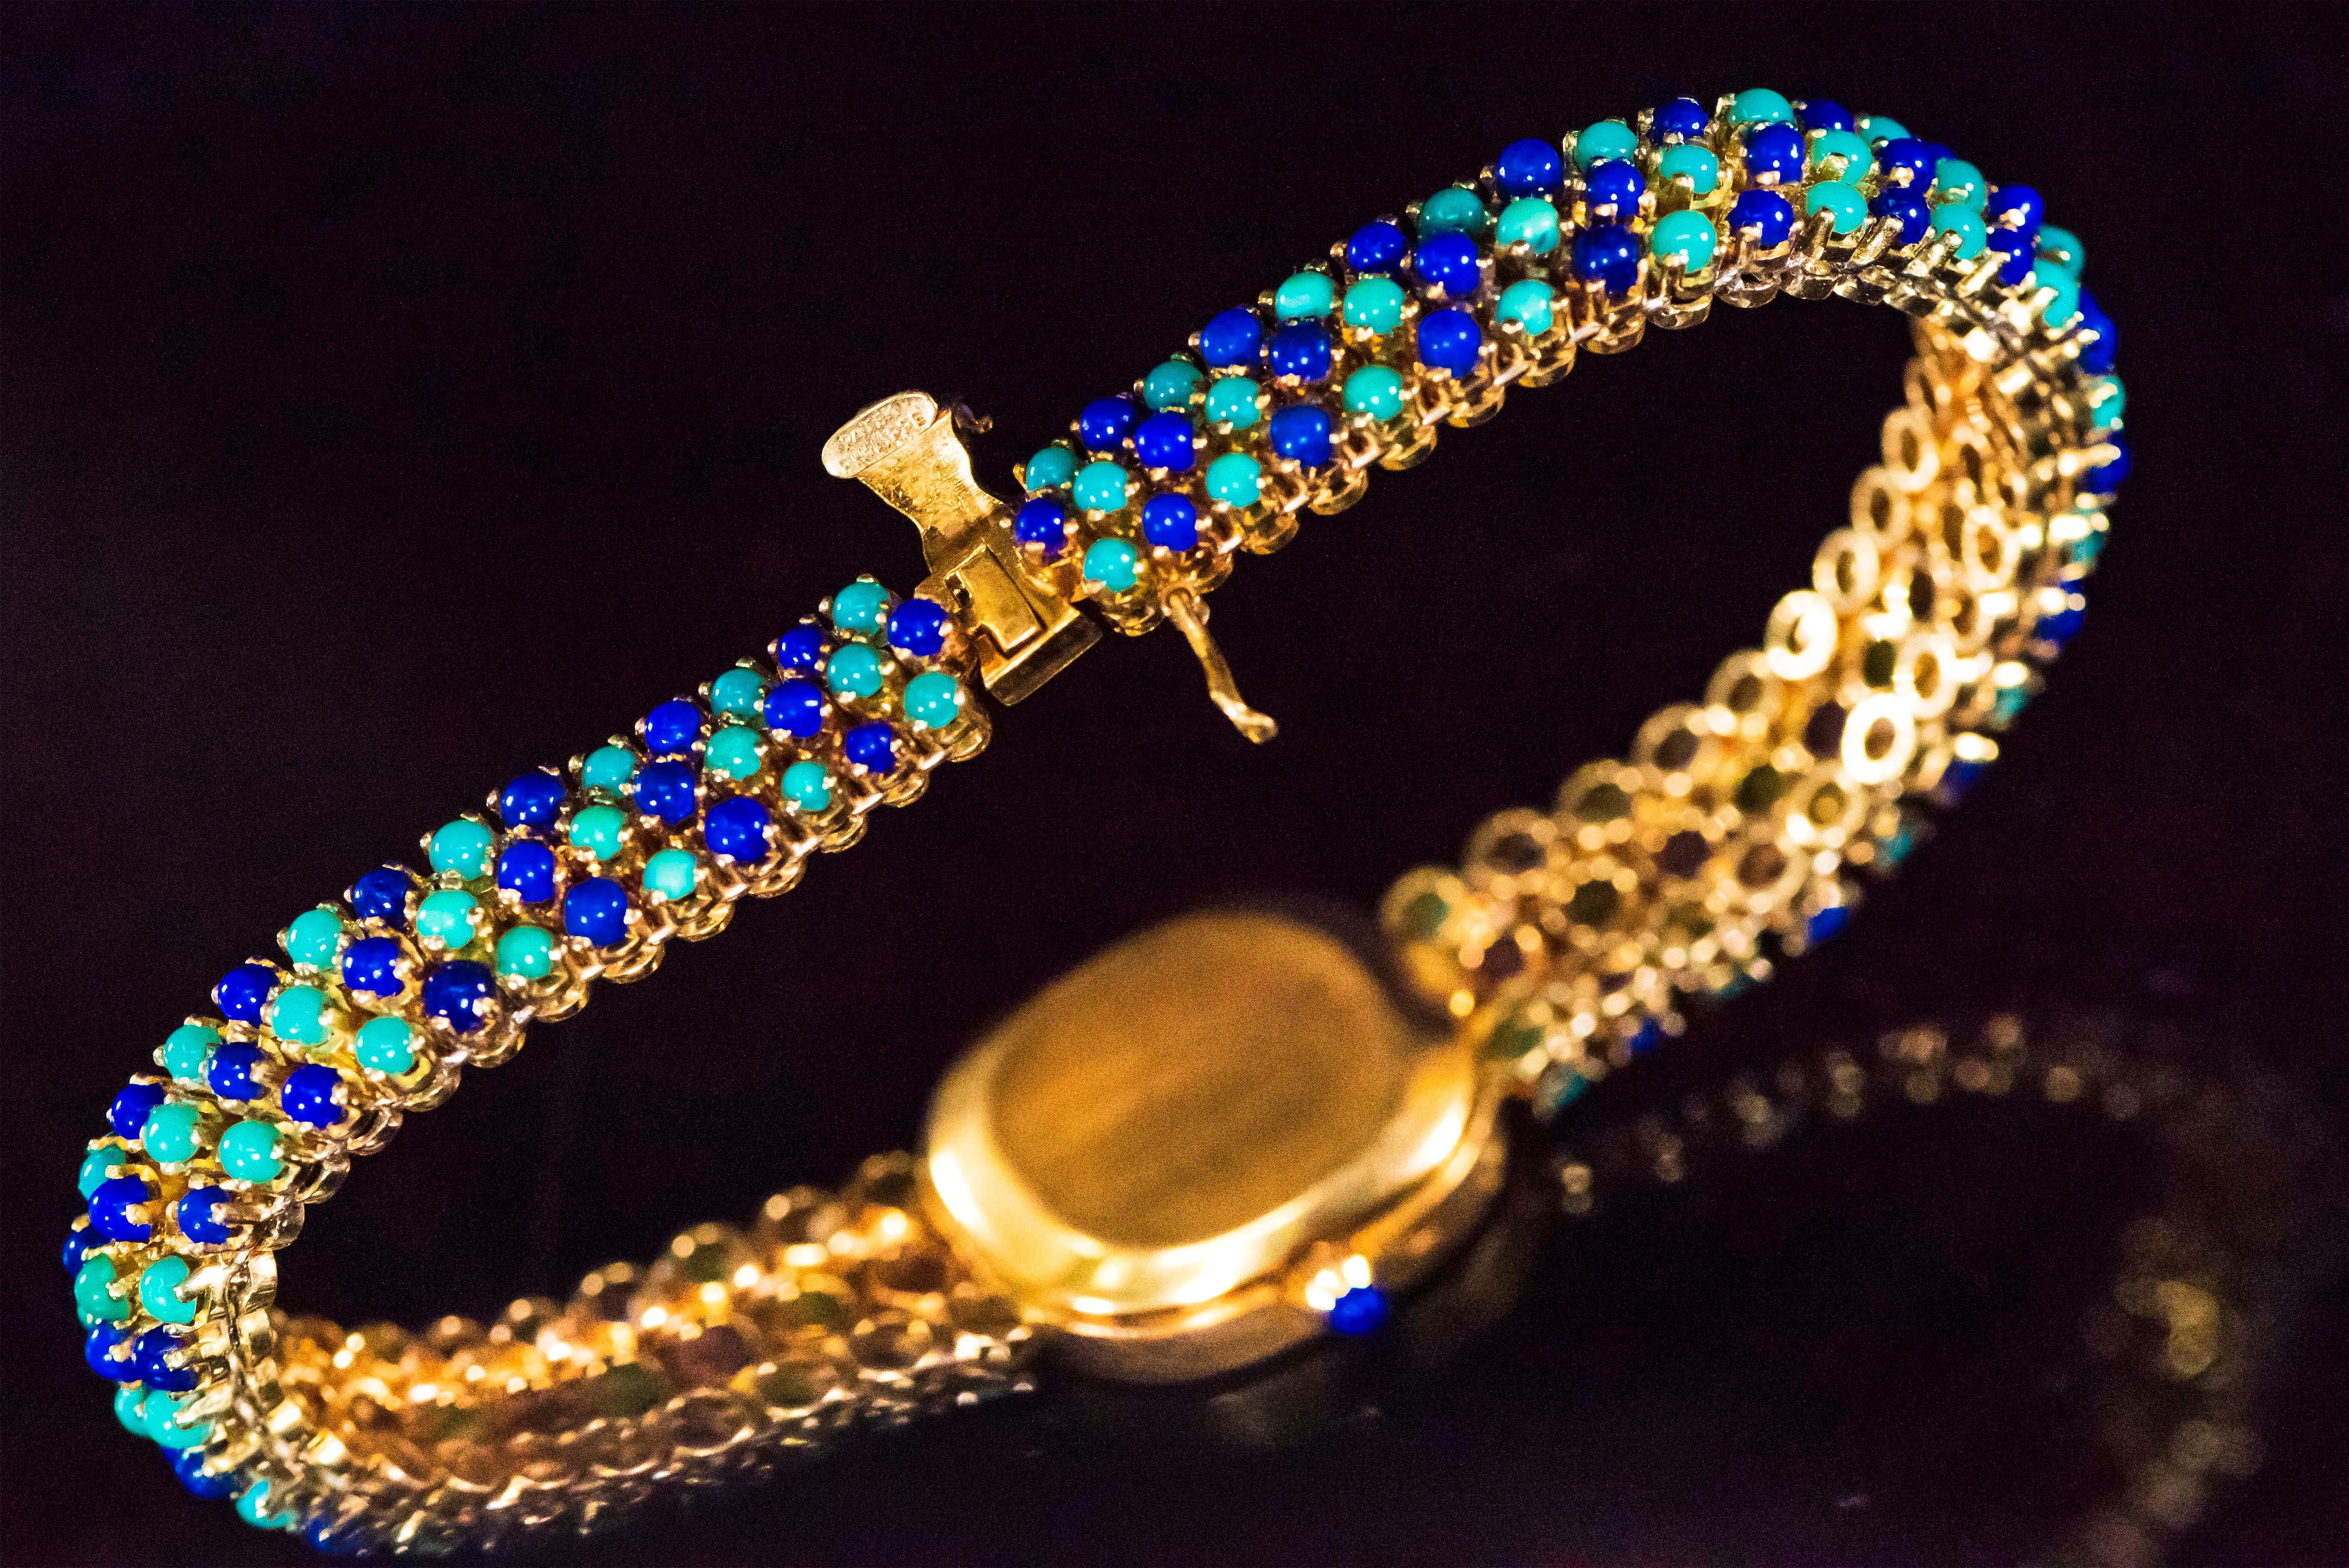 1971 Piece Unique Patek Philippe Lapis Turquoise Diamond Bracelet Watch For Sale 4